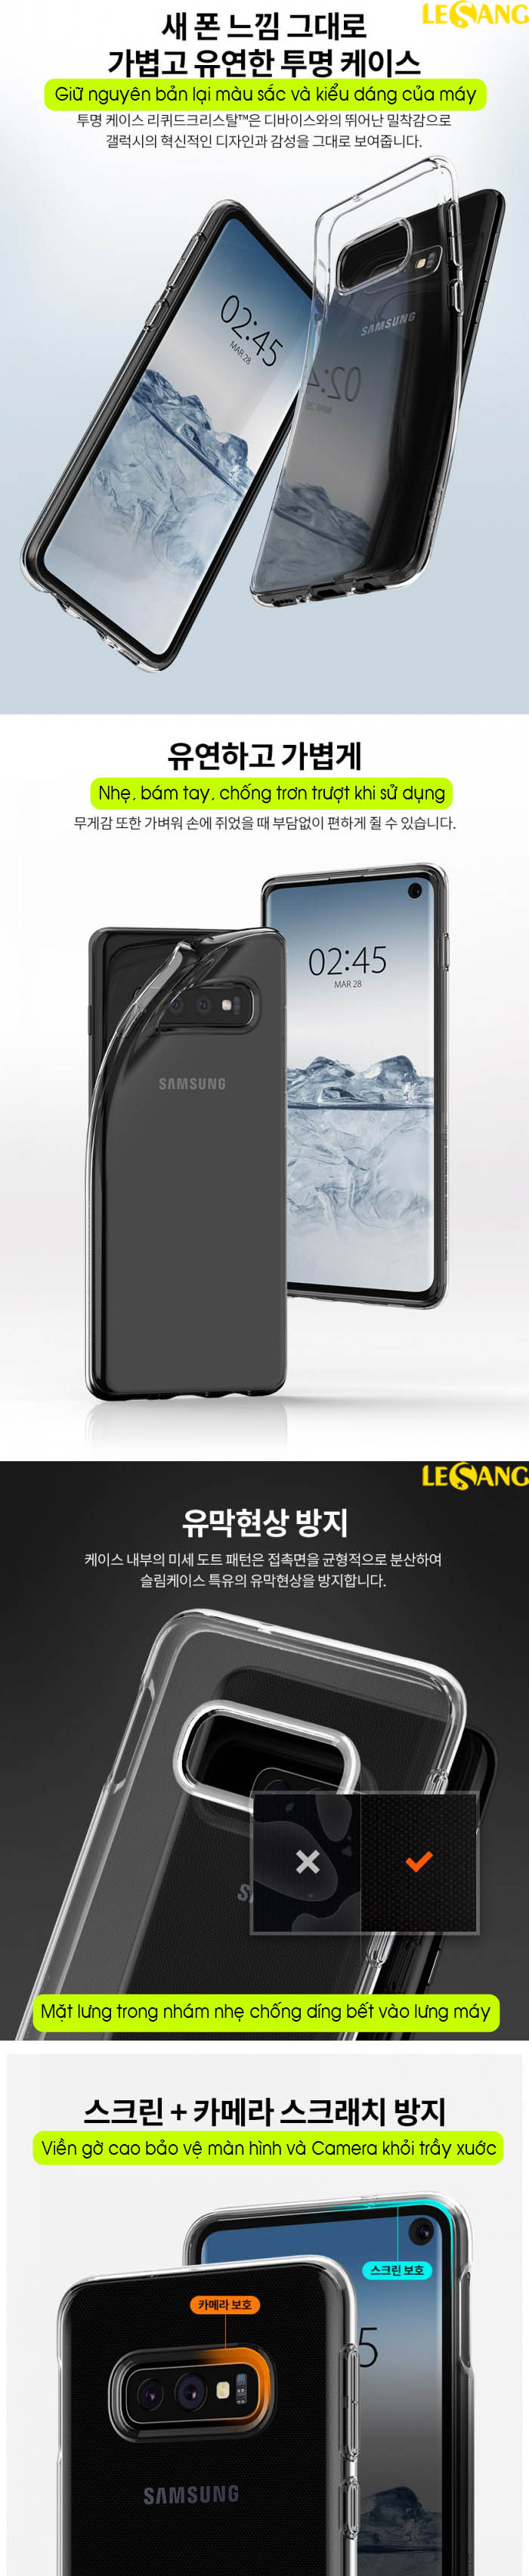 Ốp lưng Samsung Galaxy S10E Spigen Liquid Crystal 4